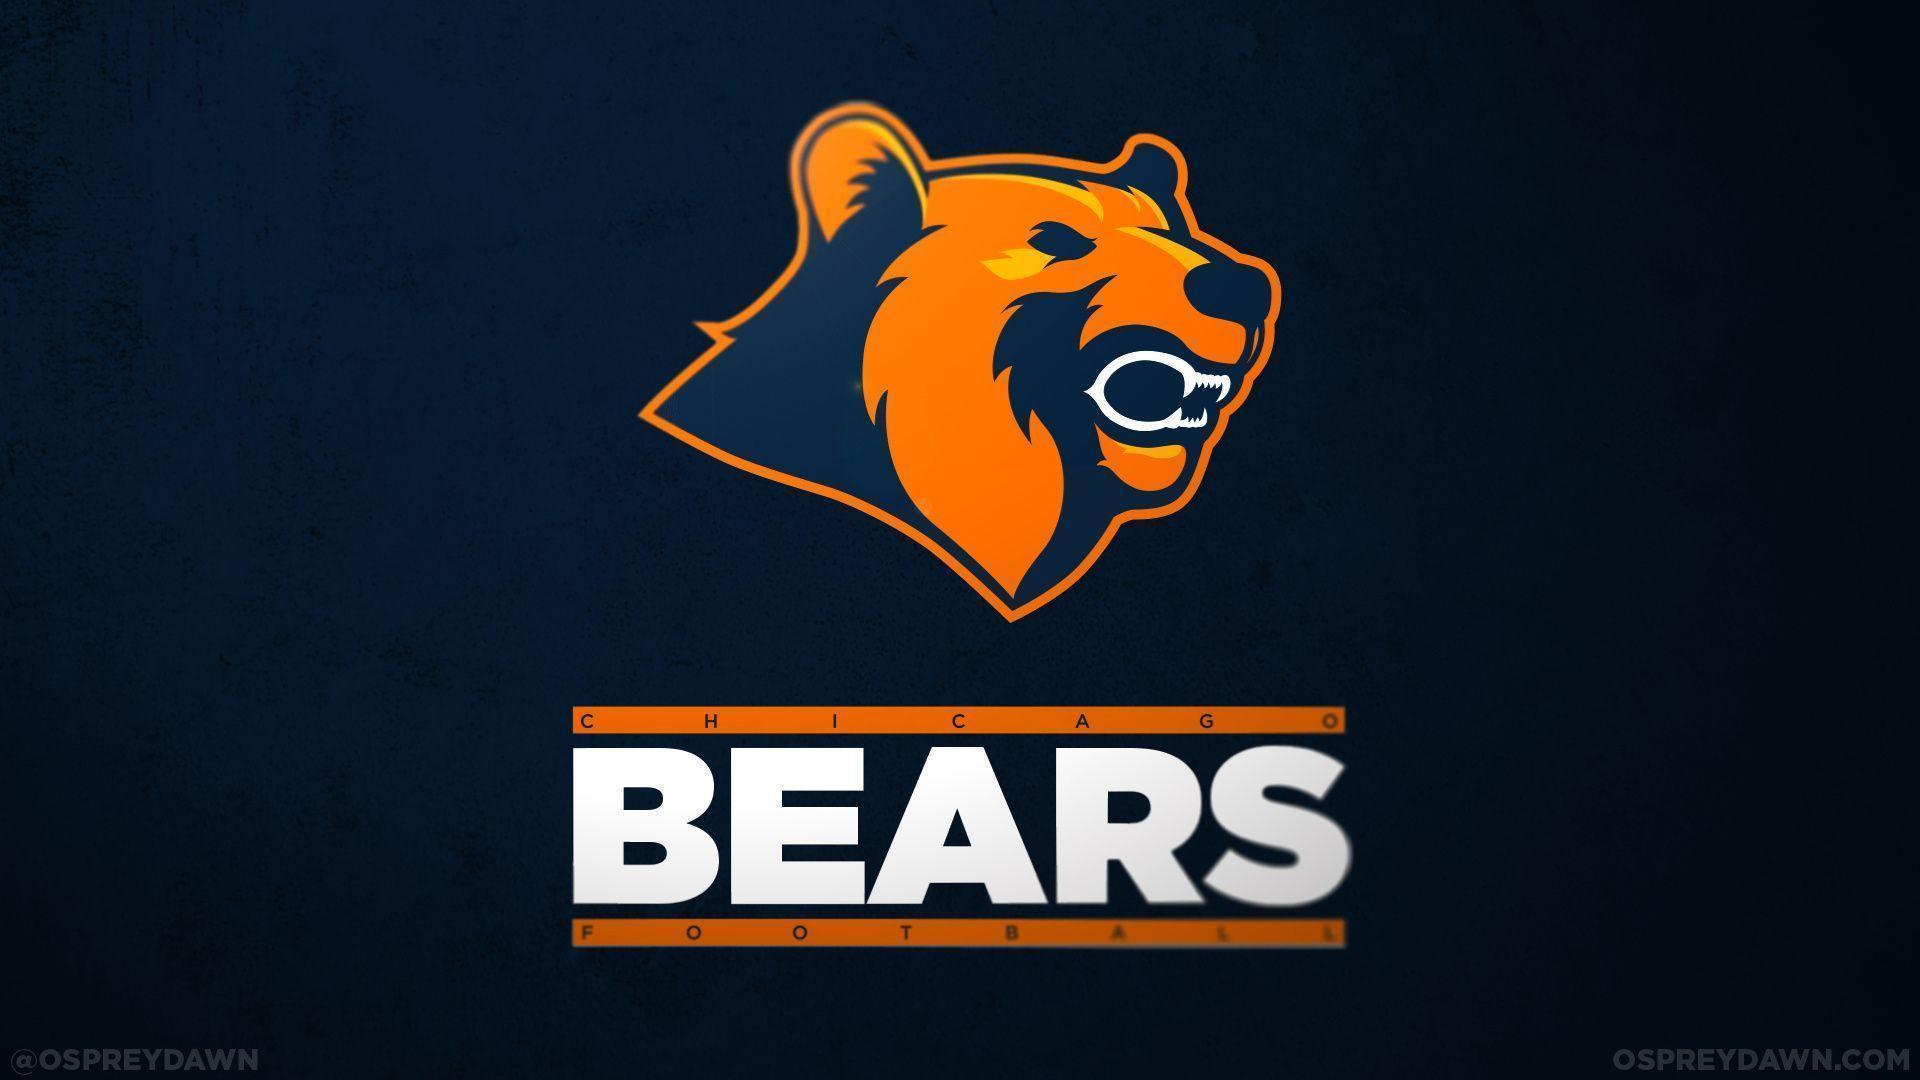 Chicago Bears Nfl Brand Logo Background, Football Art